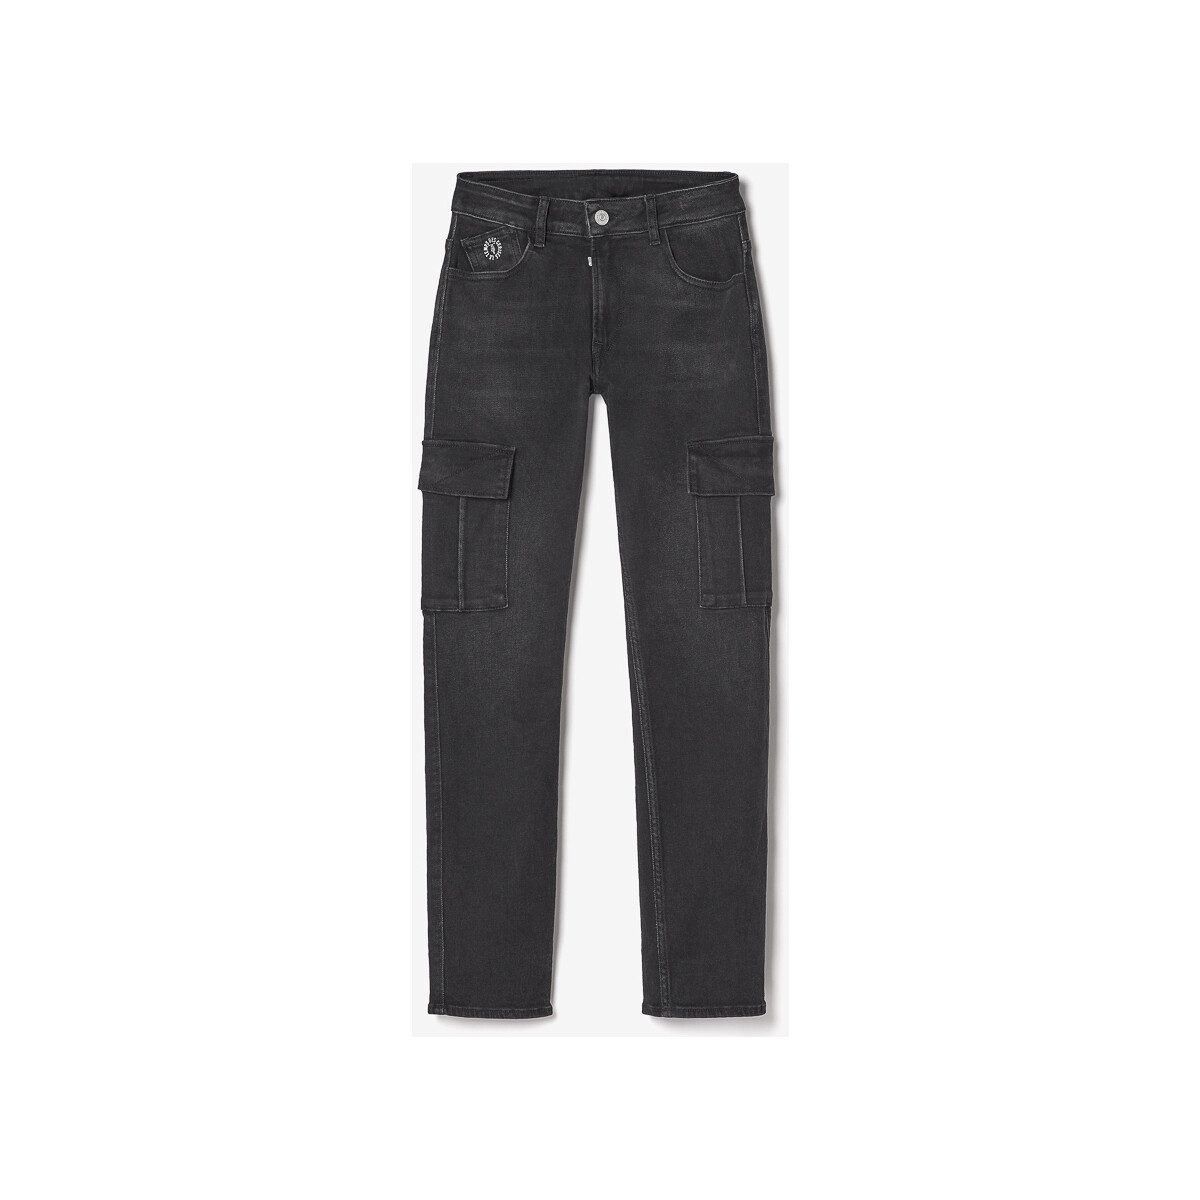 Textiel Jongens Jeans Le Temps des Cerises Jeans regular 800/16, lengte 34 Zwart